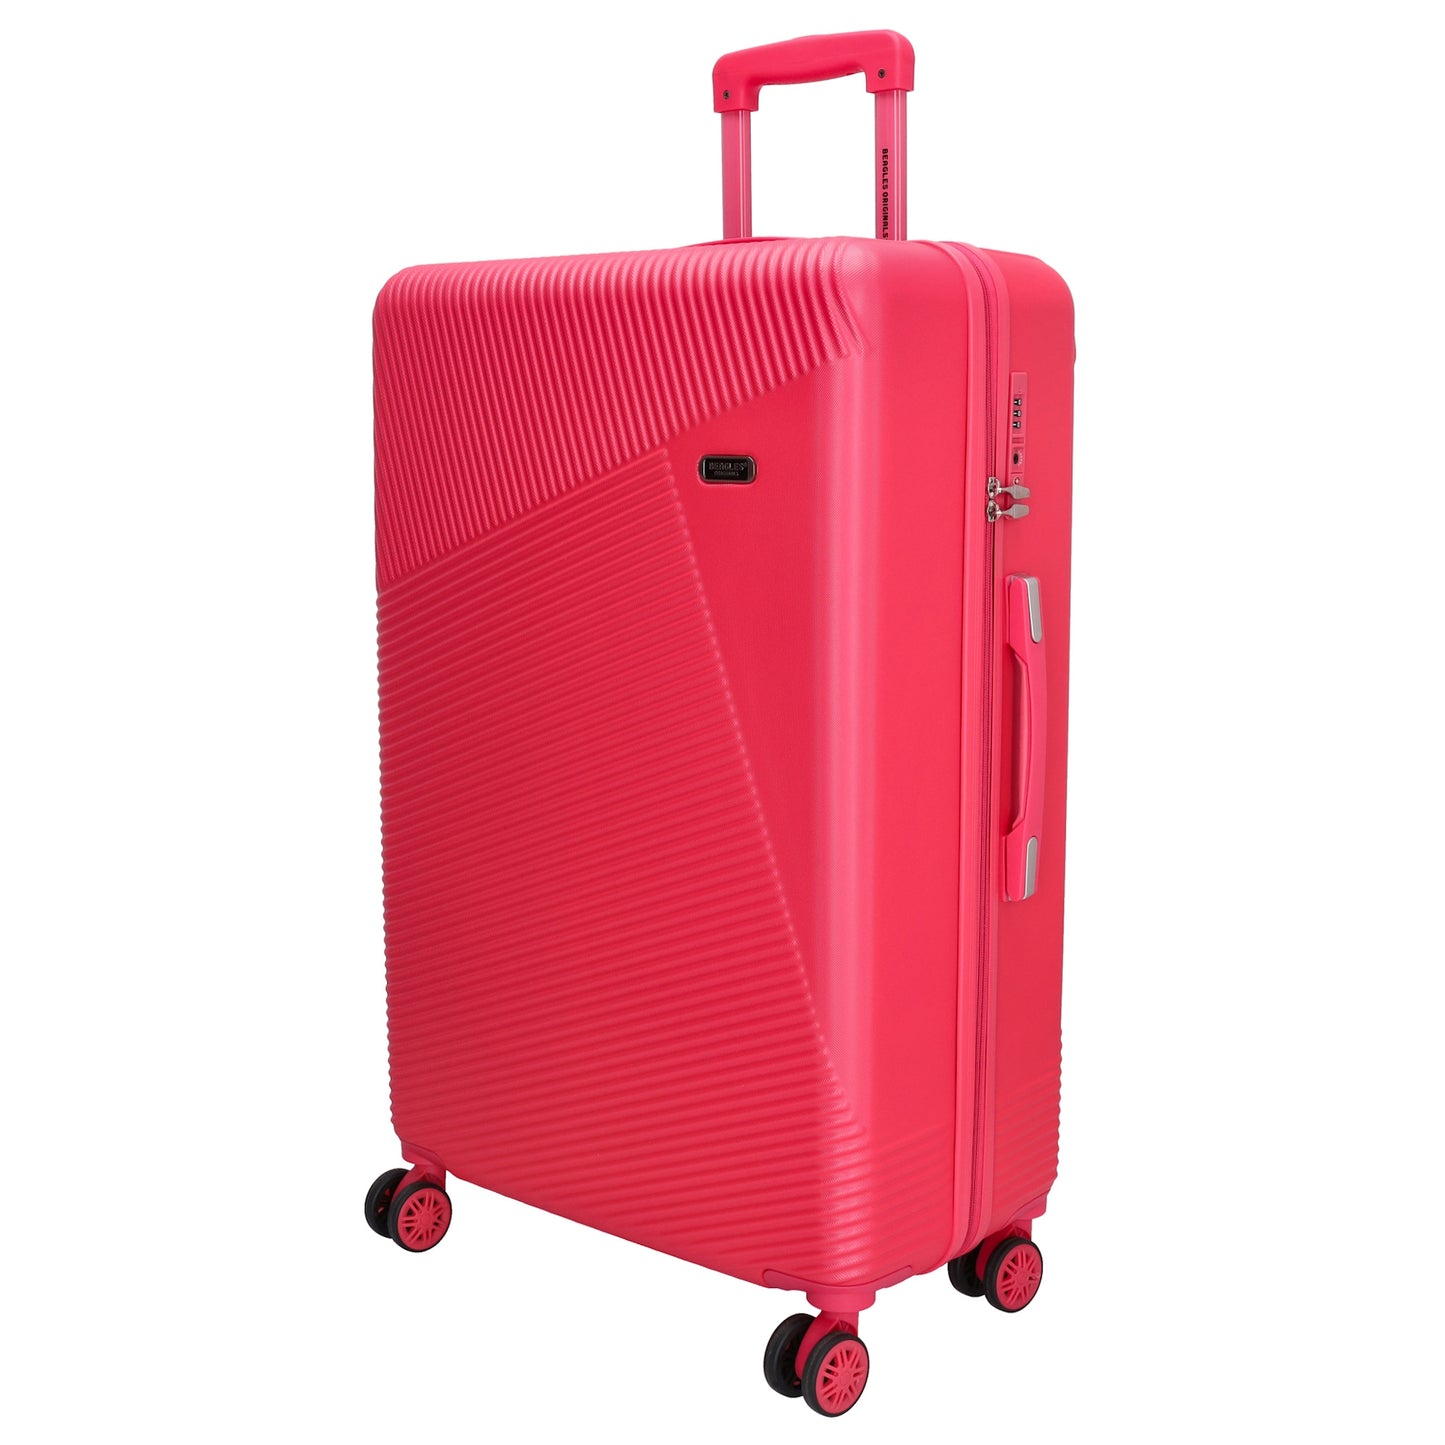 Reisetrolley-Set in Pink mit 4-Rad aus ABS